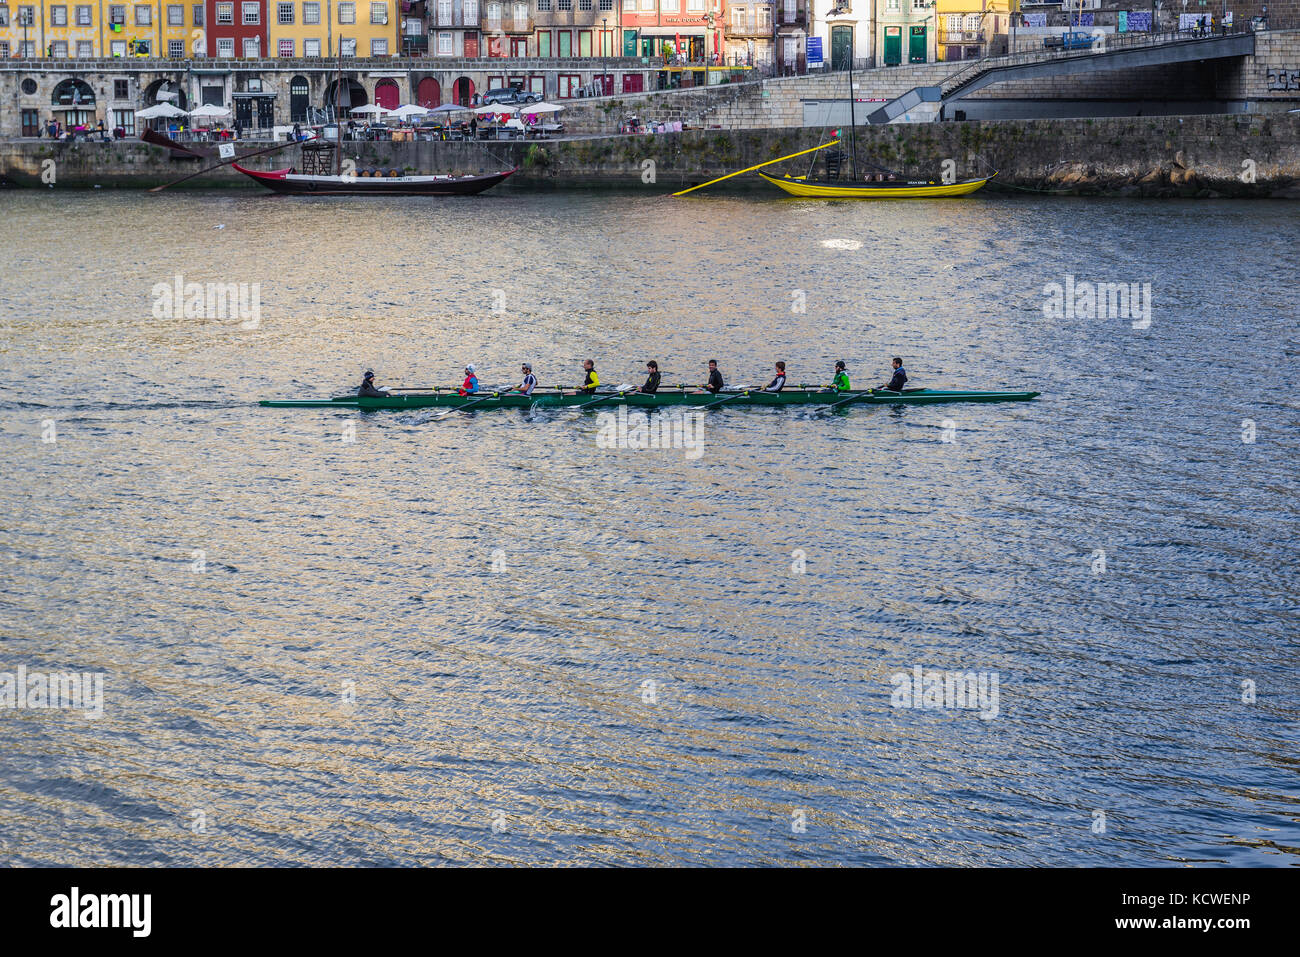 Vogatori in un otto coxed, una barca a remi spazzata sul fiume Douro visto dalla città di Vila Nova de Gaia, Portogallo. Città di Porto sullo sfondo Foto Stock